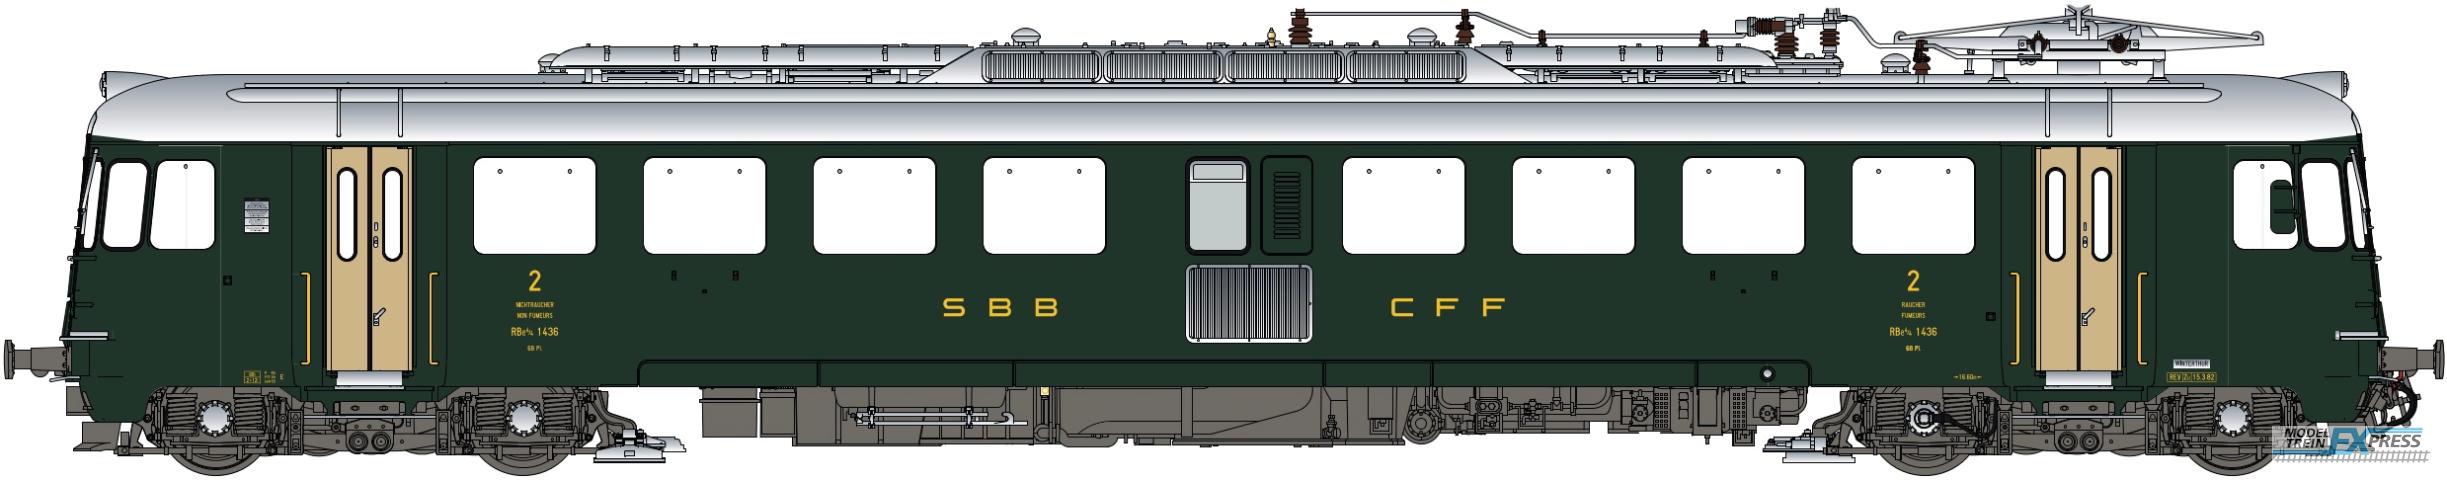 LS Models 17051 RBe 4/4, 1436, groen, goudkleurige deuren, oude opschriften  /  Ep. IVb  /  SBB  /  HO  /  DC  /  1 P.